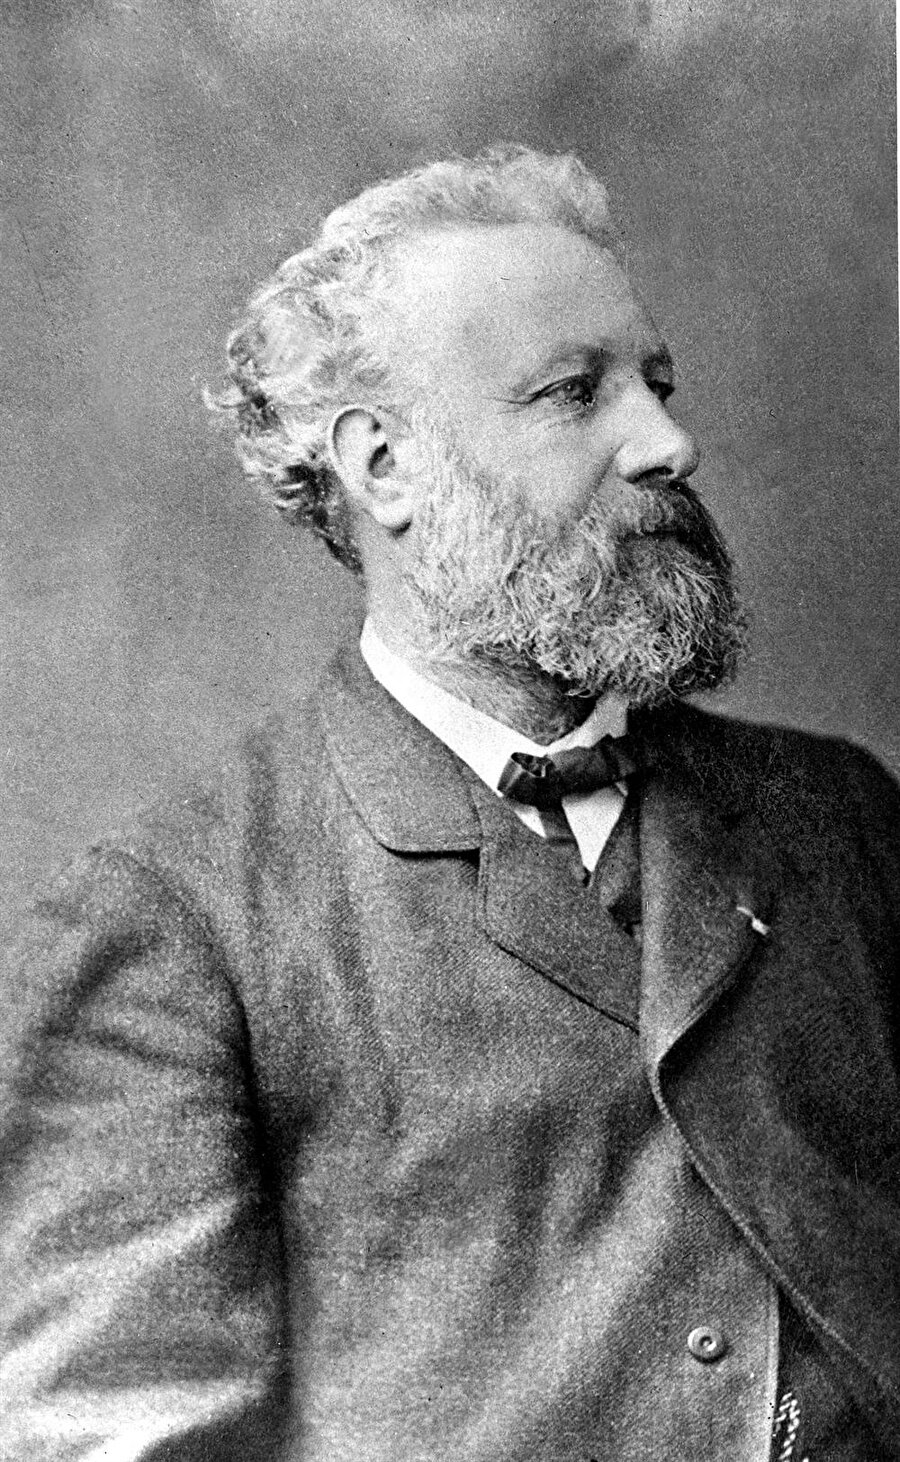 1828’de dünyaya geldi
8 Şubat 1828 yılında Fransa'da dünyaya gelen Jules Verne yazdığı hikayelerle hafızalara kazınmıştır.